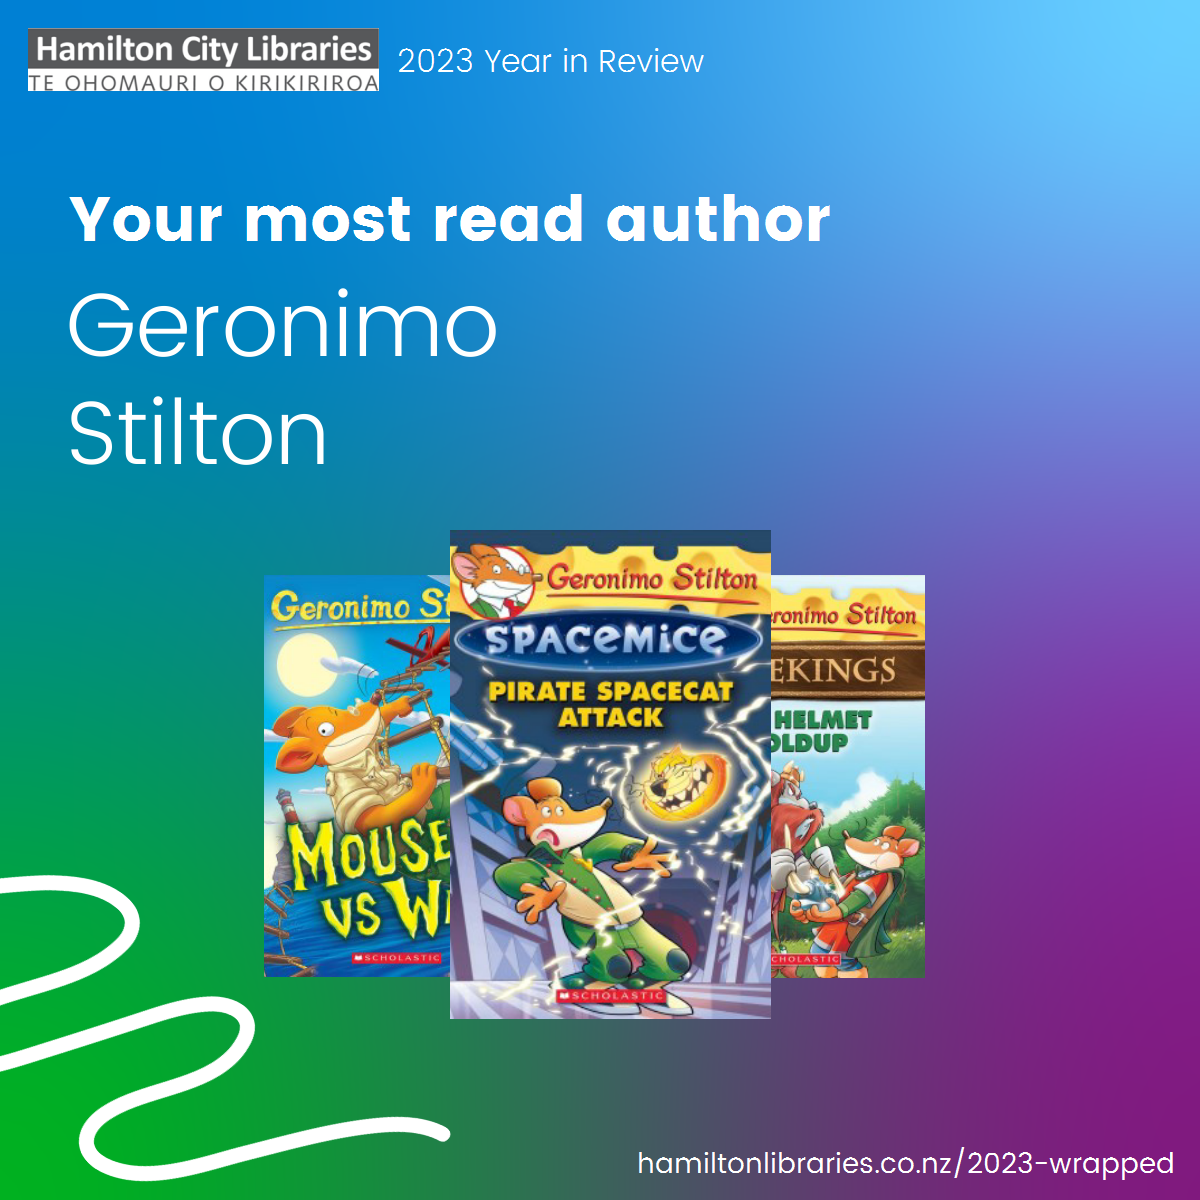 Top Author: Geronimo Stilton